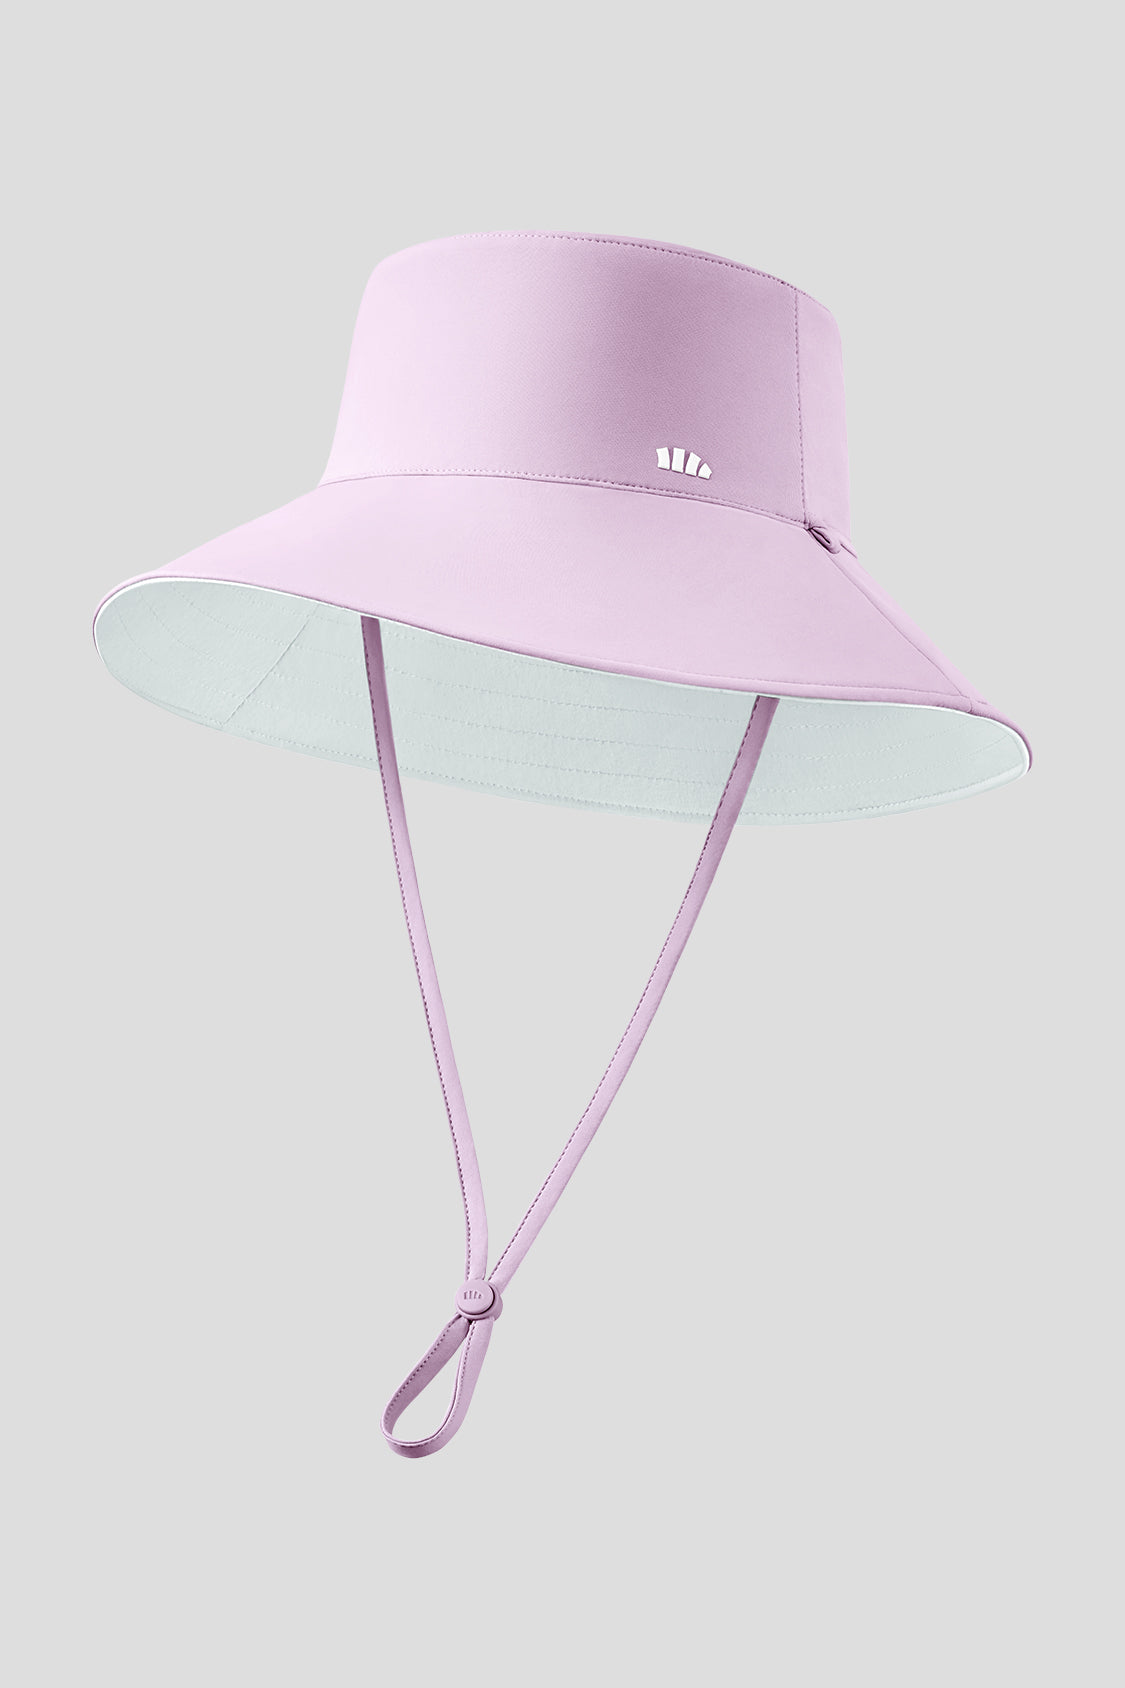 beneunder women's sun hats #color_purple - sand cloud white